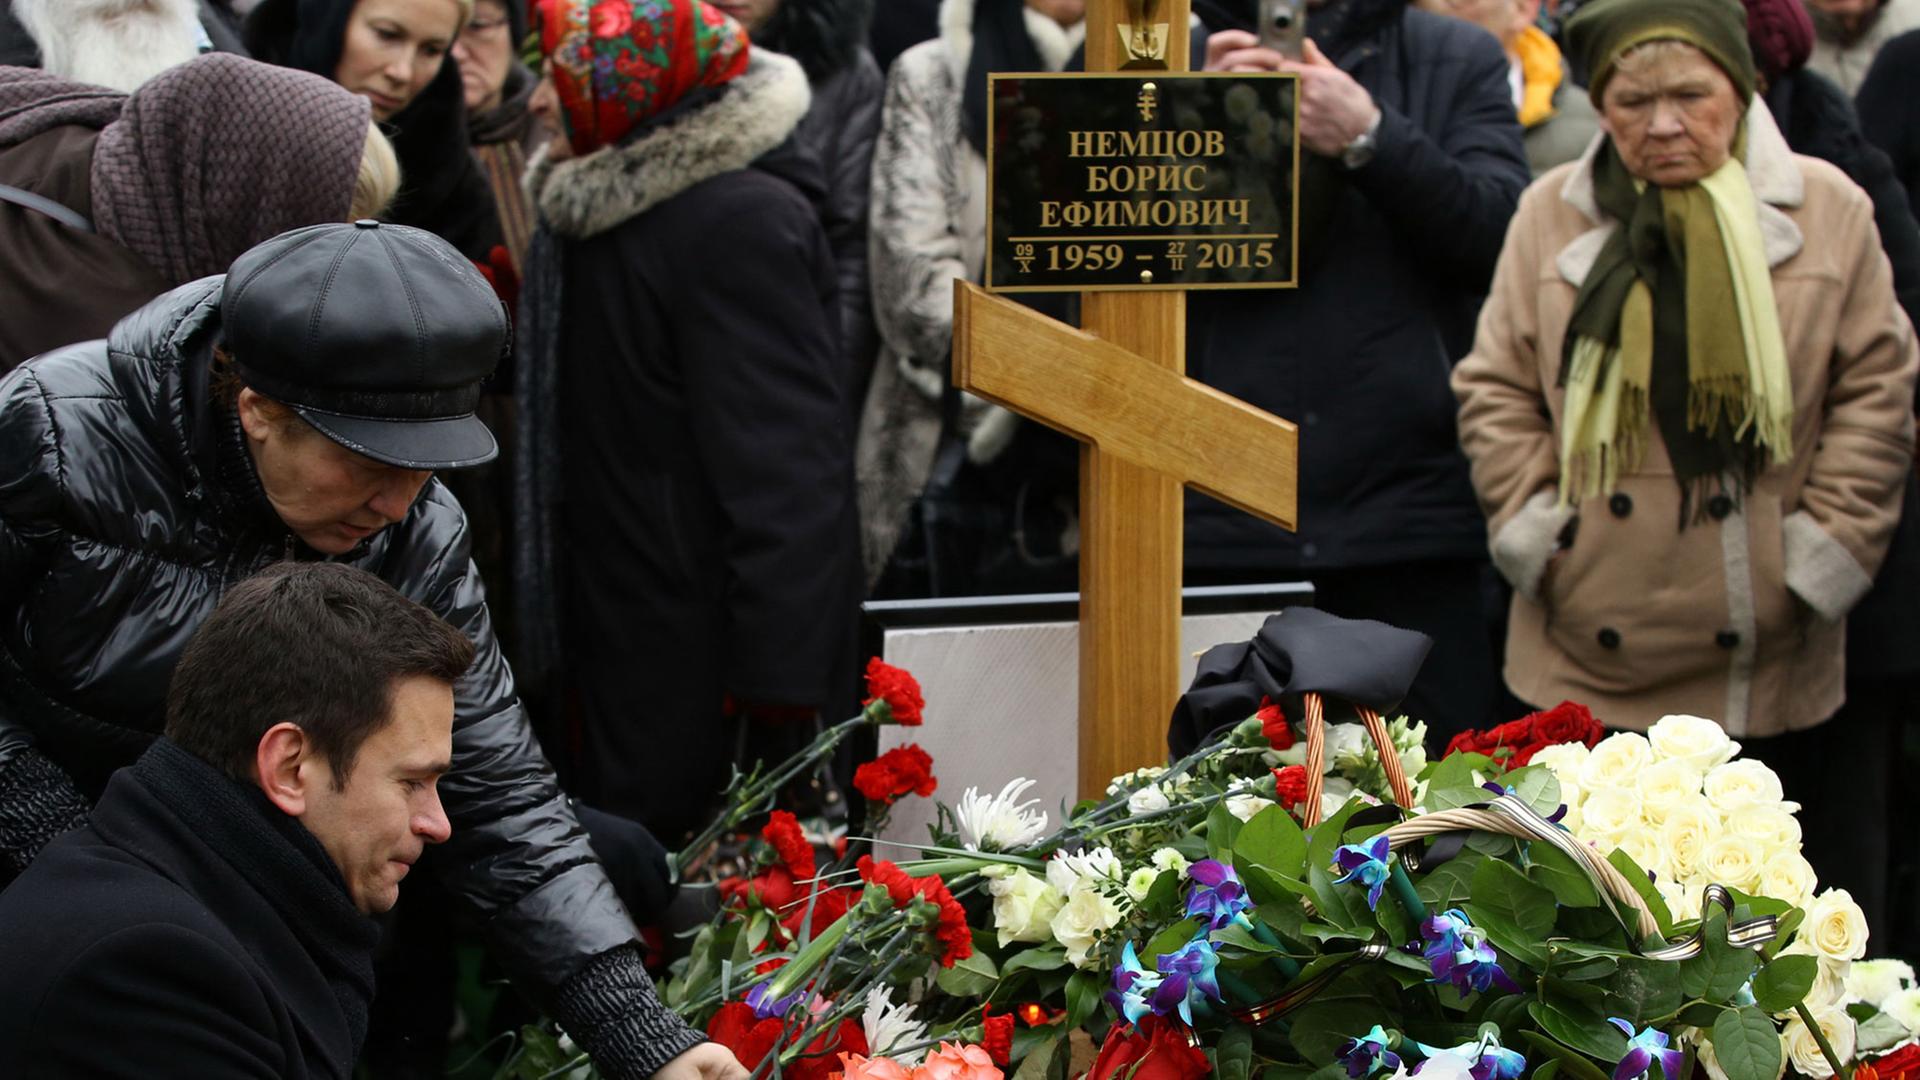 Trauernde, darunter die Oppositionelle Ilya Yashin (l), legen Blumen auf das Grab von Kreml-Kritiker Boris Nemzow auf dem Trojekurowo-Friedhof in Moskau.